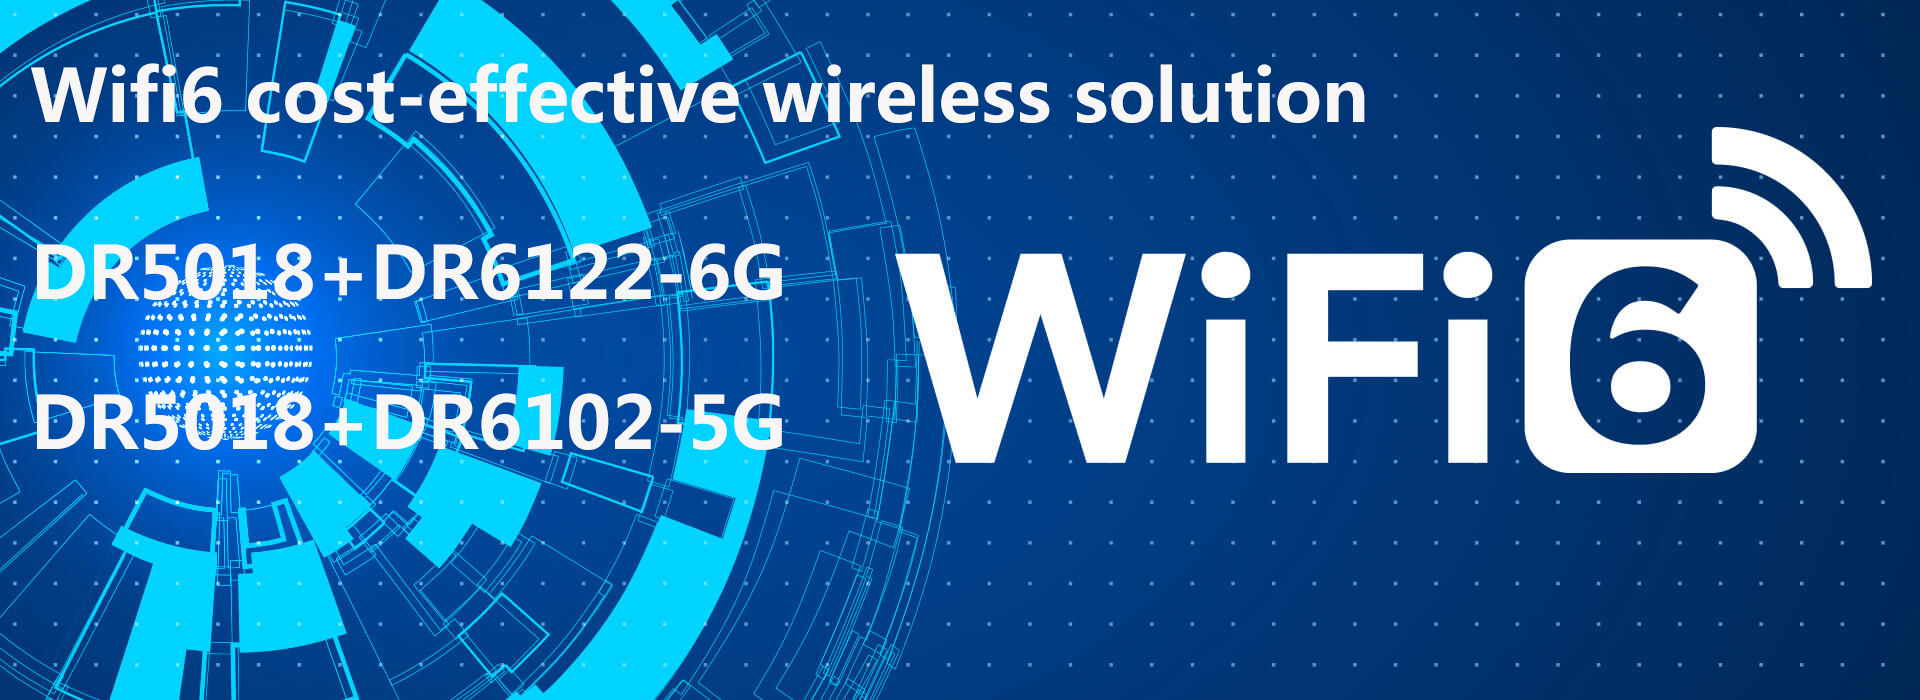 Wifi6 wireless solution|IPQ5018+QCN6122+QCN6102 support 2.4G/5G/6E